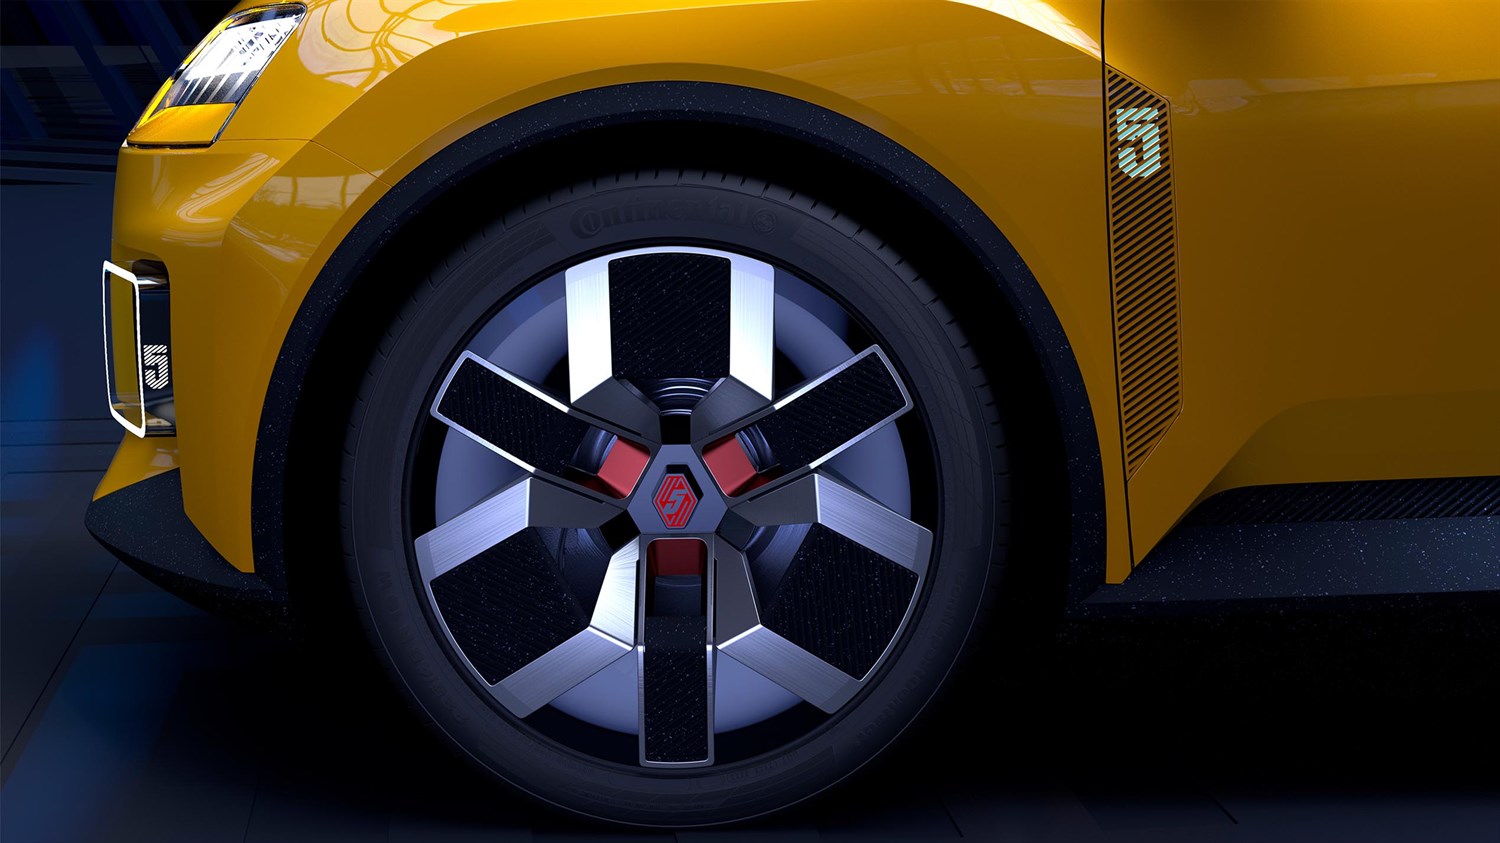 souci du détail - Renault 5 E-Tech electric prototype